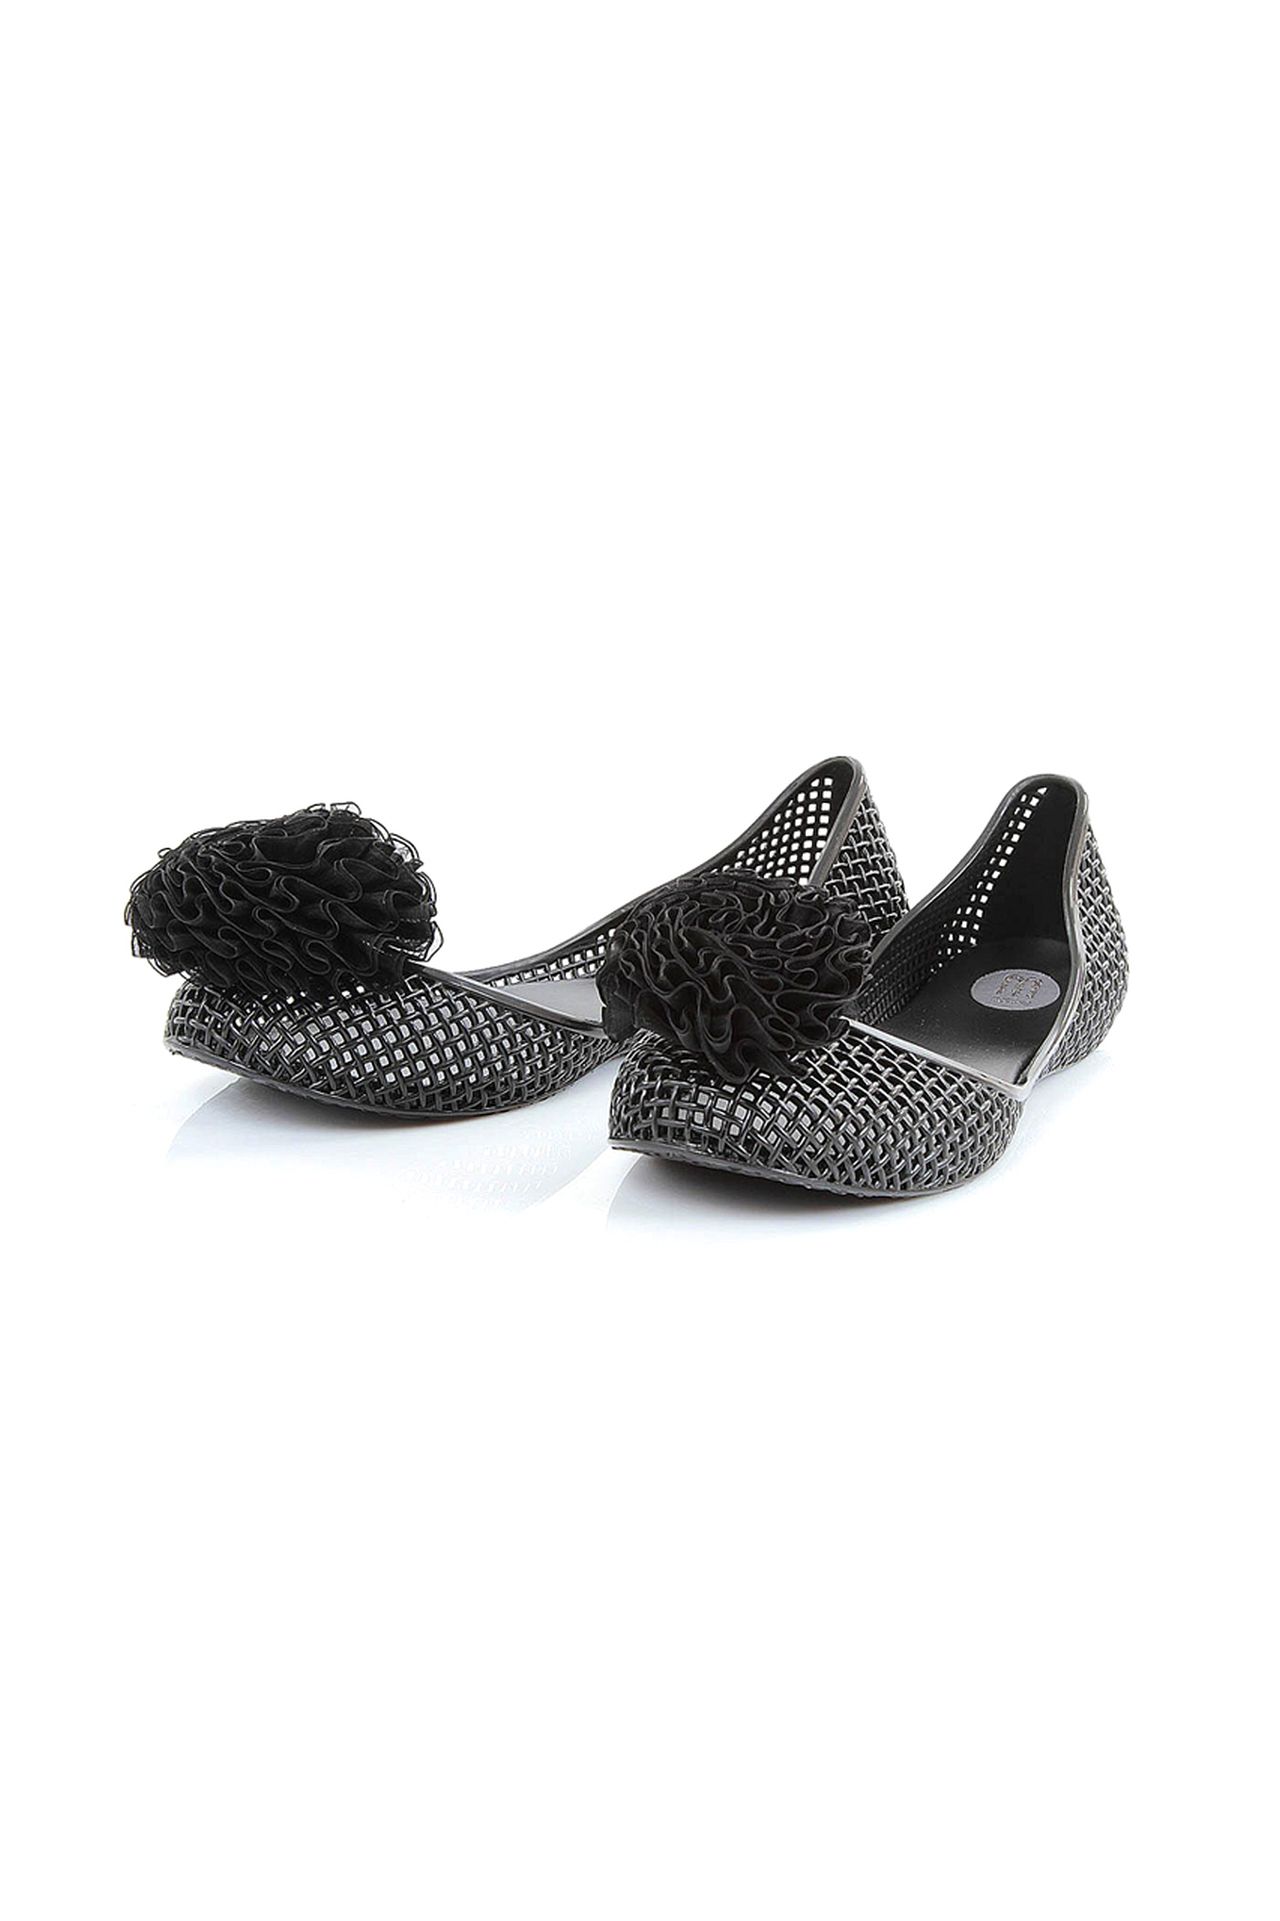 Обувь женская Балетки MELISSA (30550/11.1). Купить за 2950 руб.